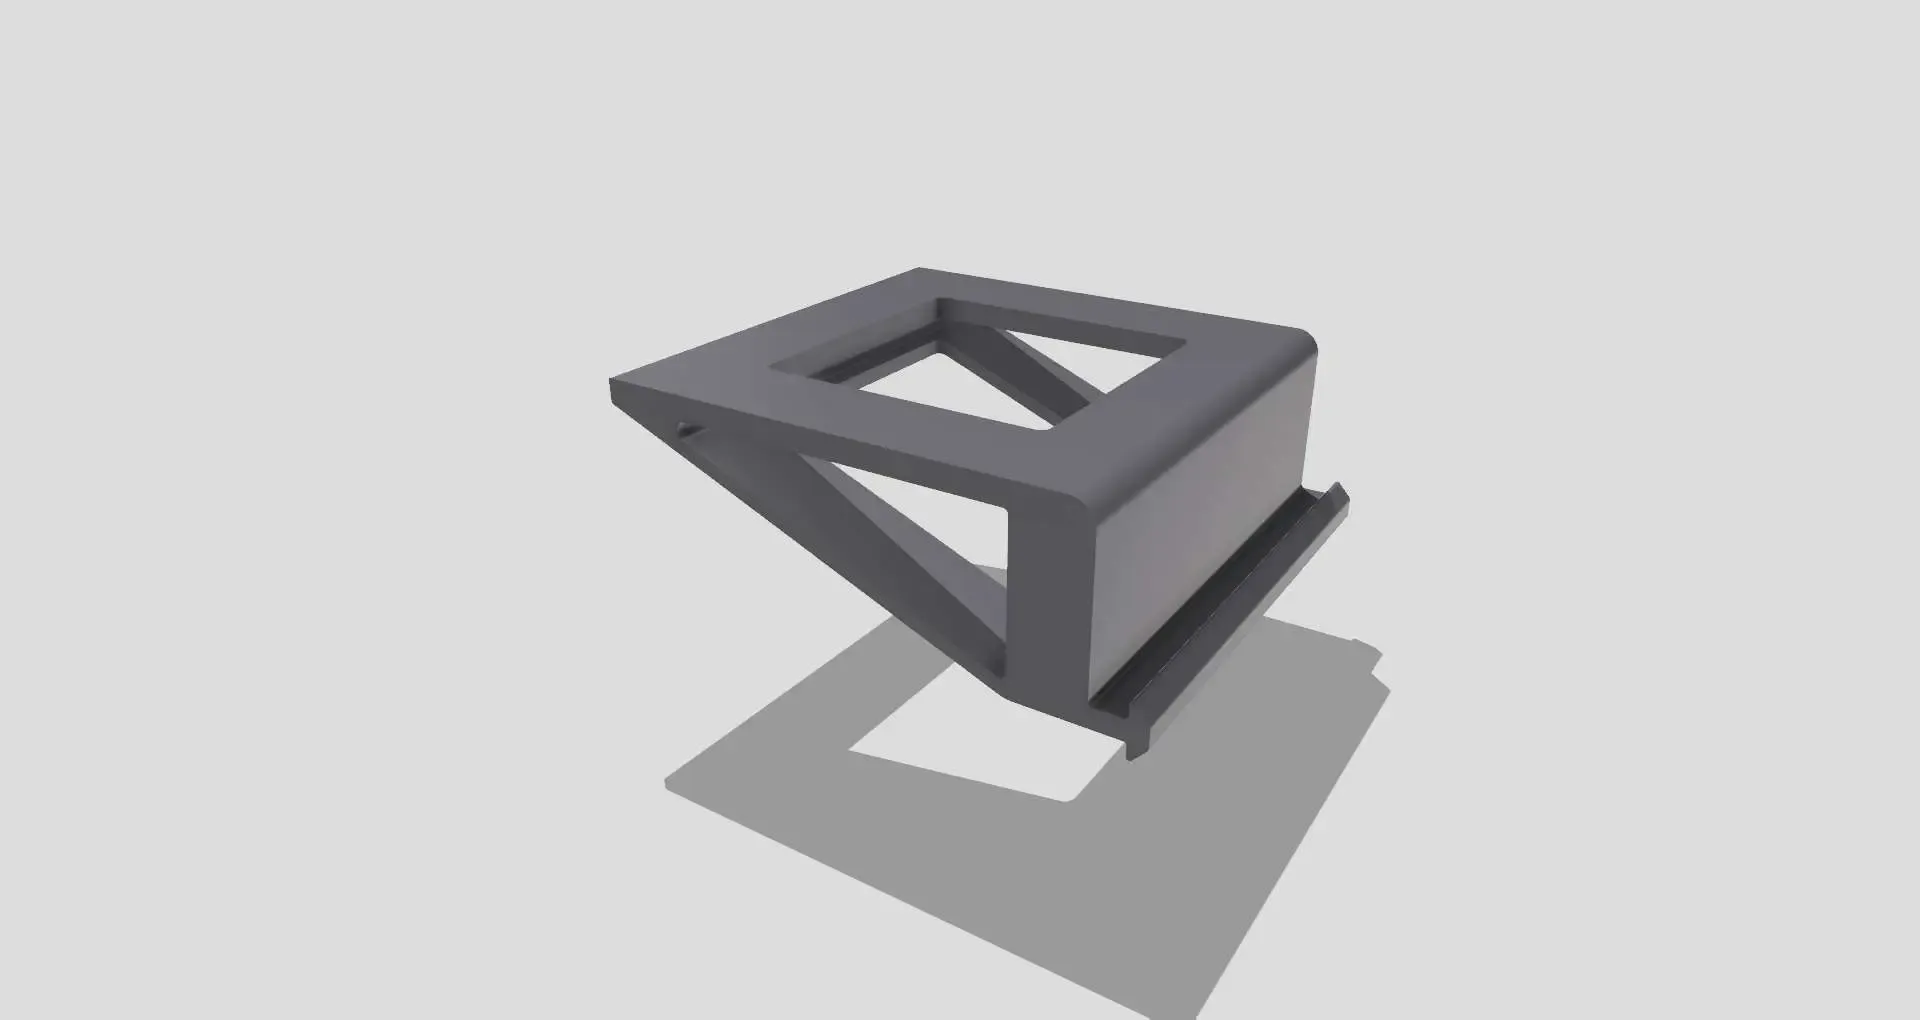 Ender3V2 Polymaker Filamentboxholder for Direktdrive Upgrade